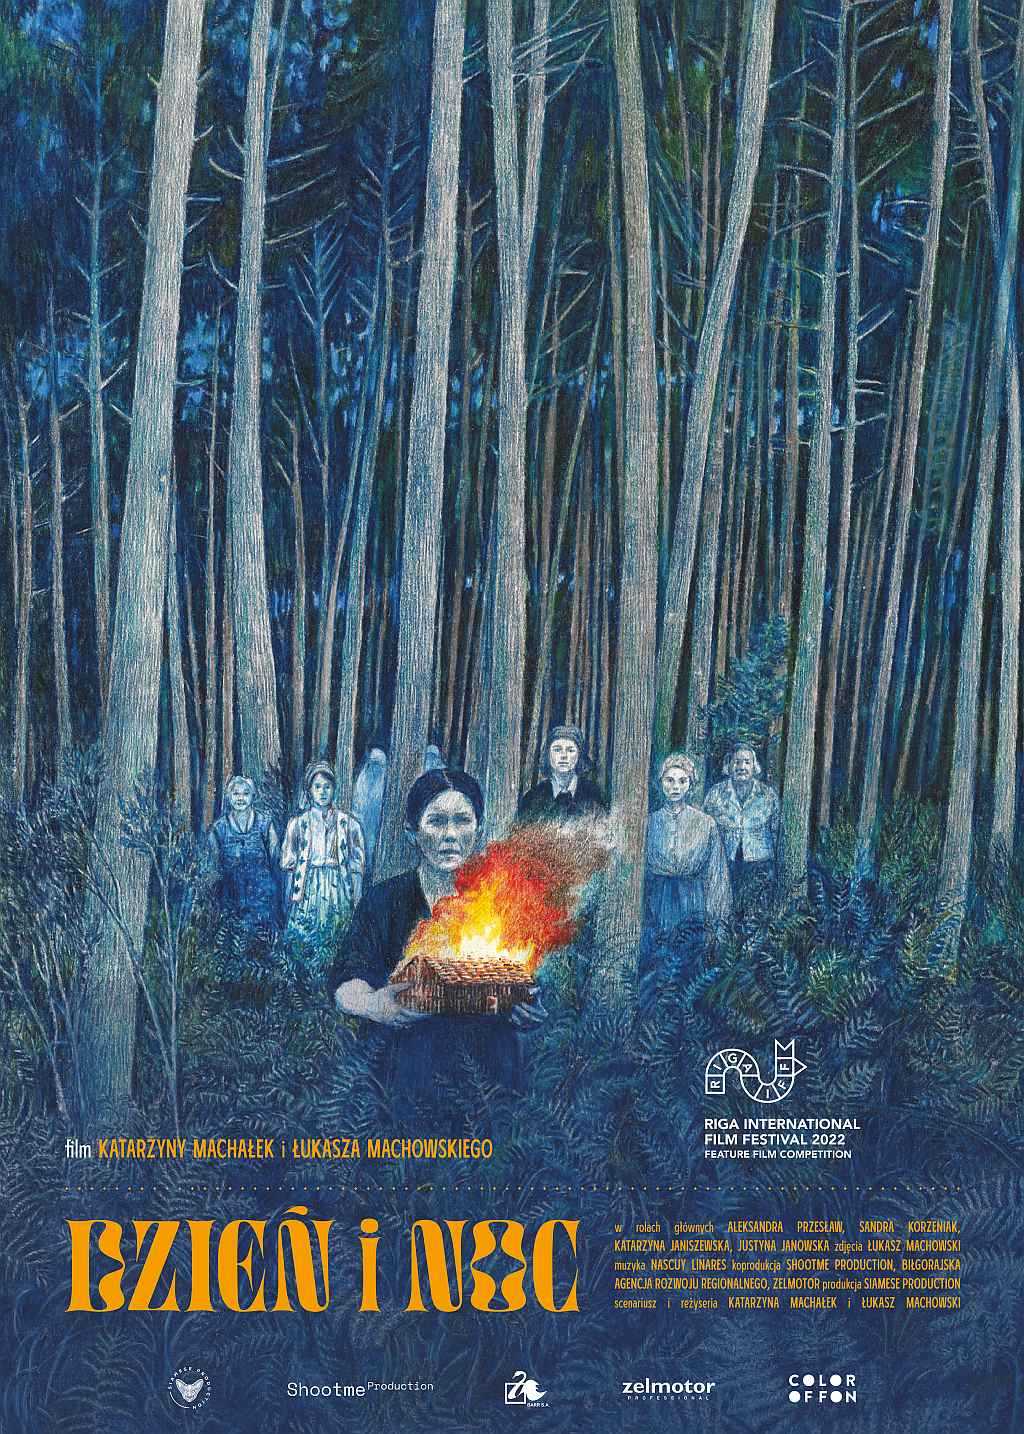 na plakacie na pierwszym planie kobieta z ogniem w rękach, z tyłu wśród drzew kobiety